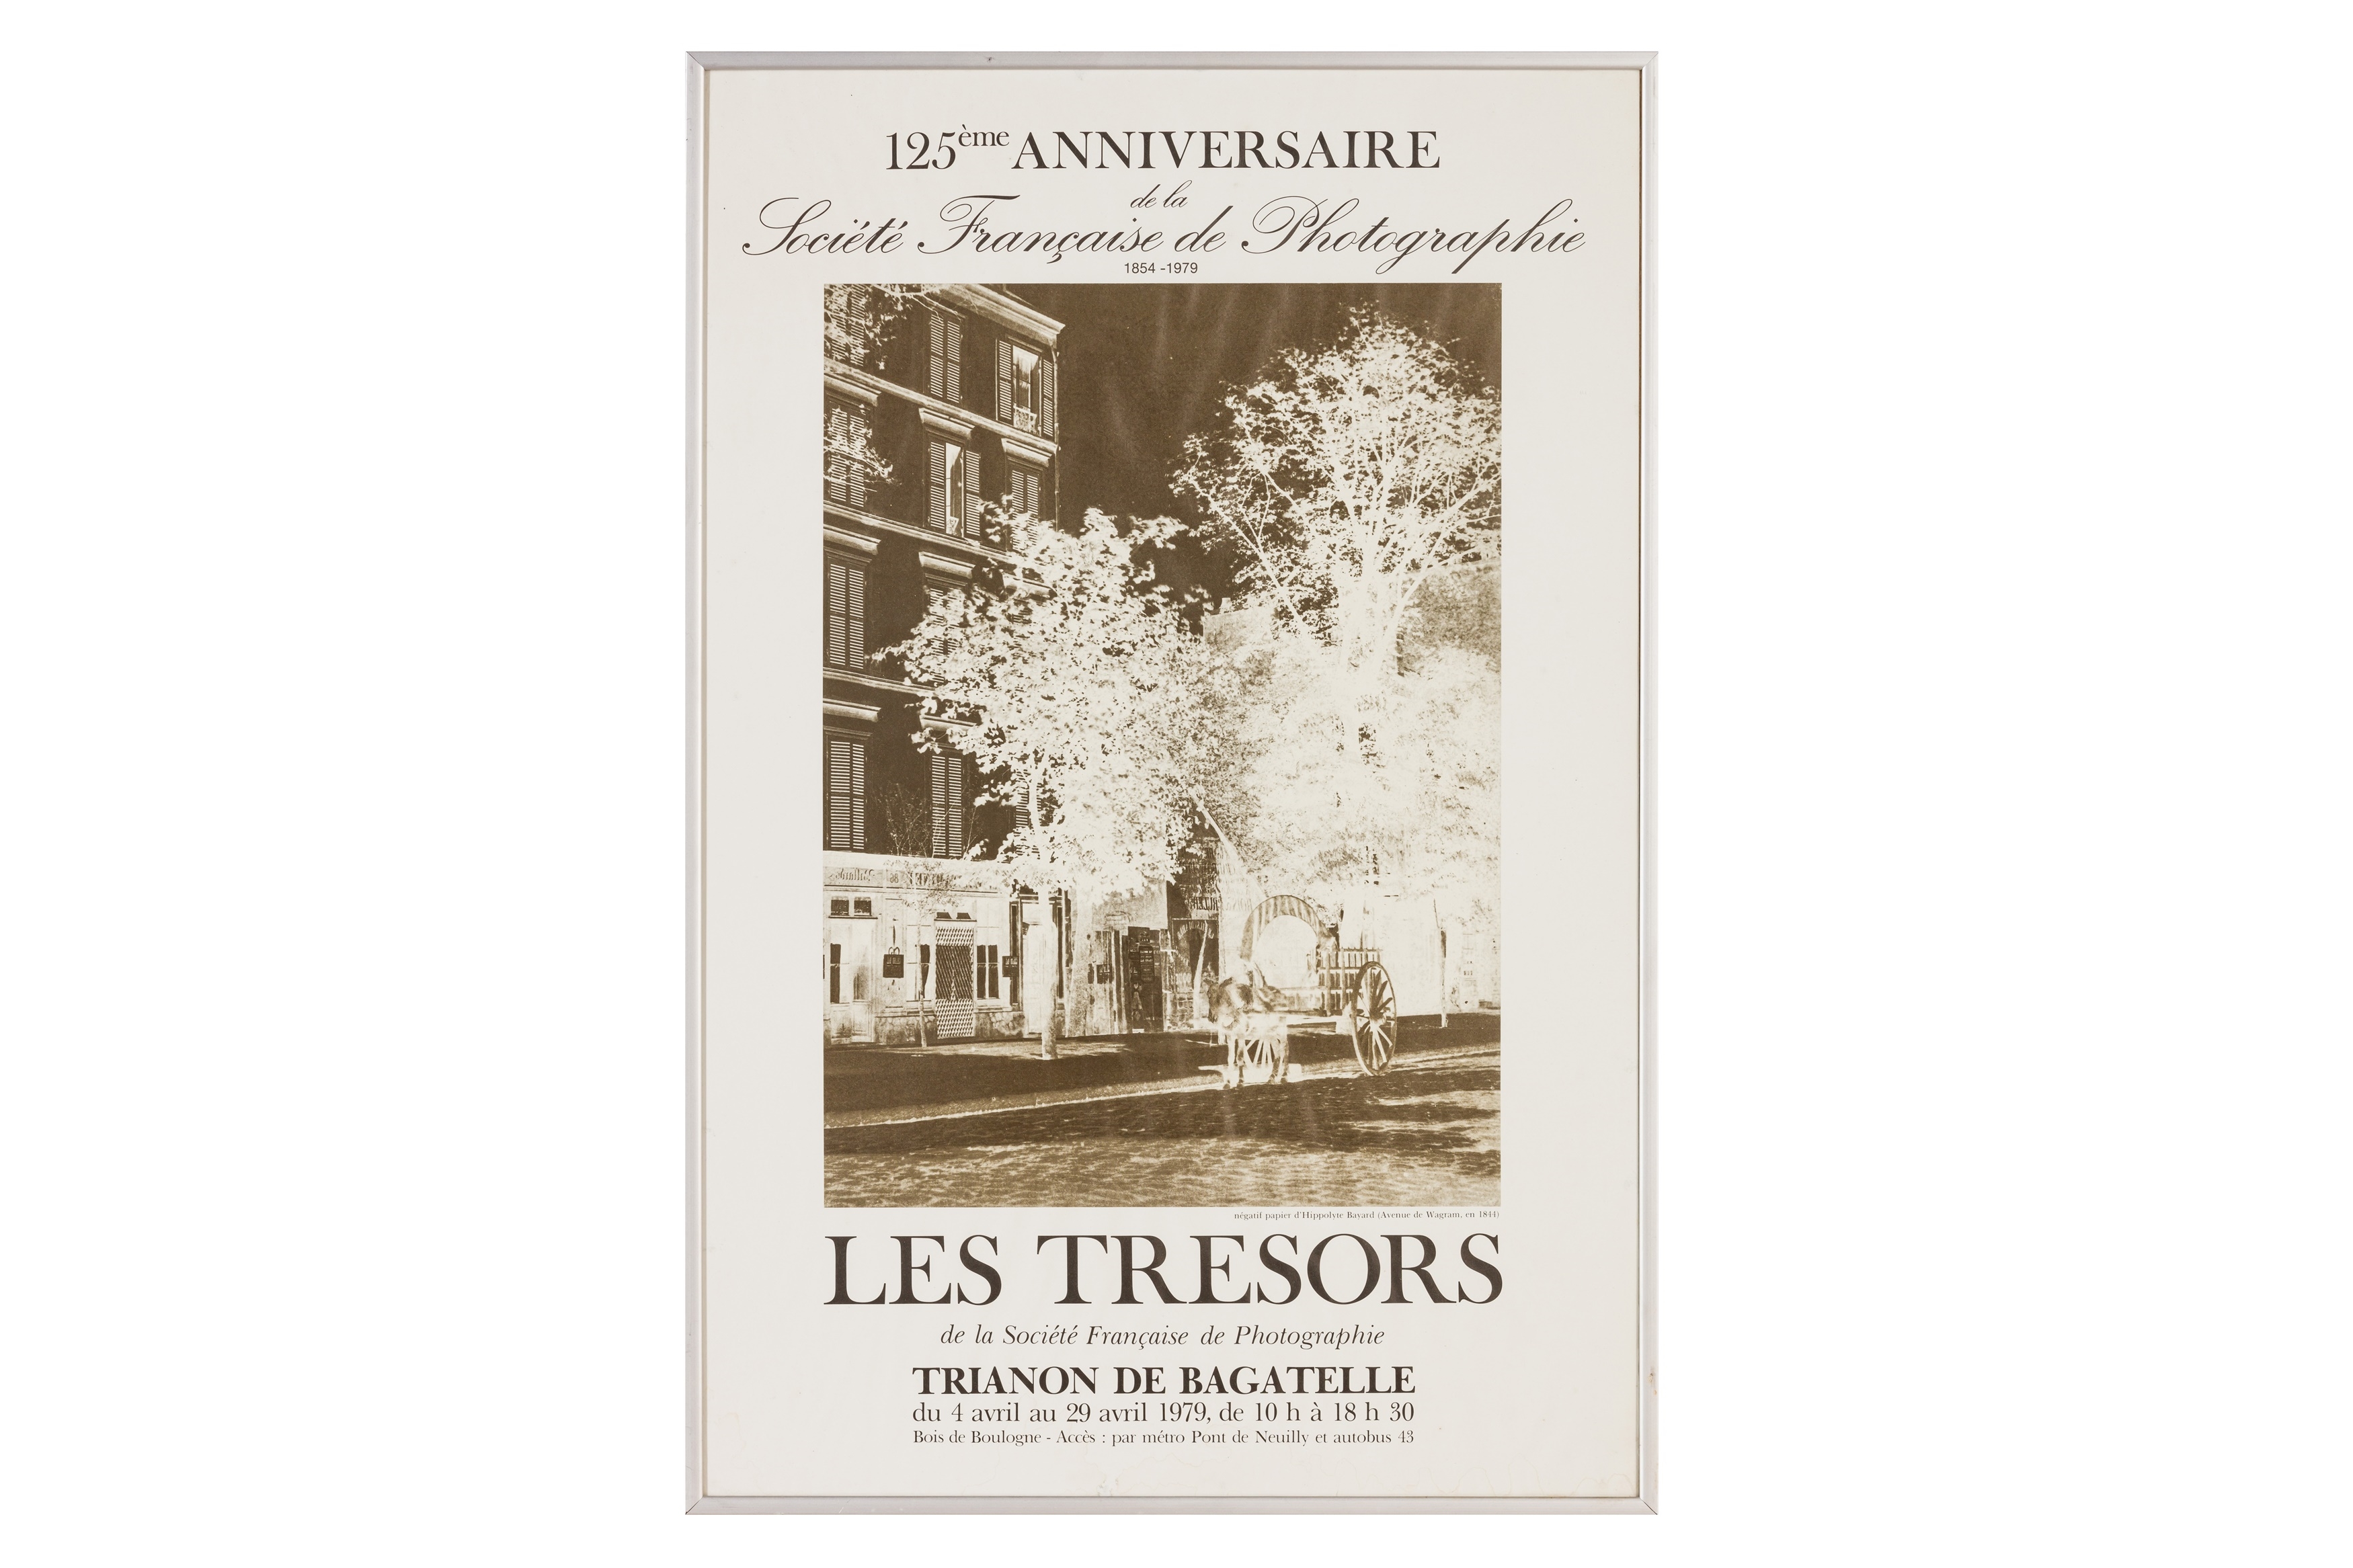 Les Tresors de la Societe Francaise de Photographie by Hippolyte Bayard, April1979